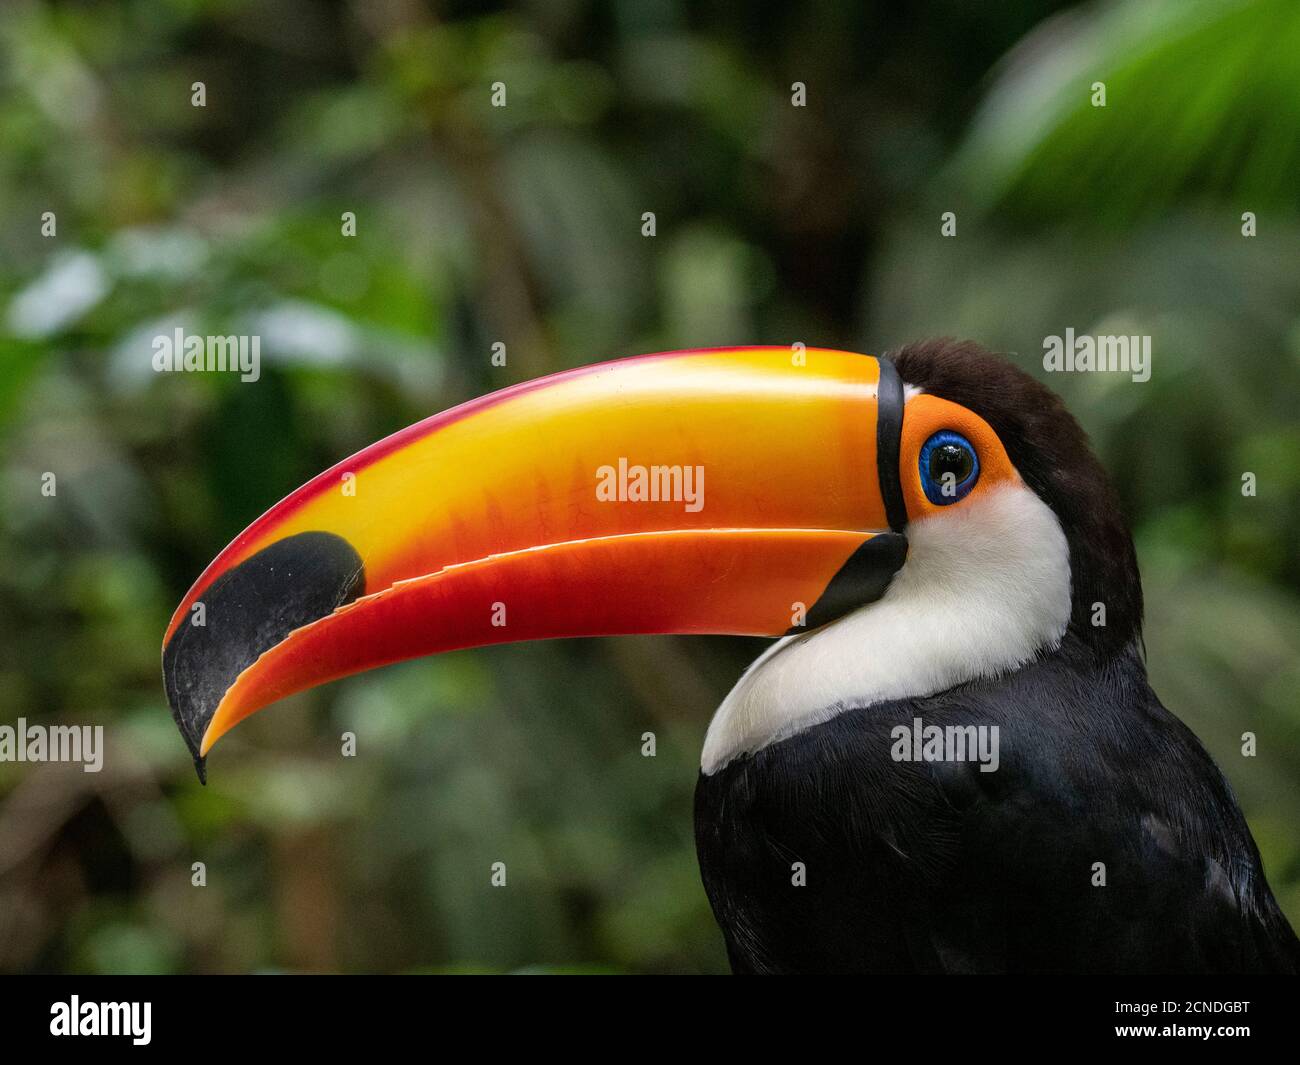 Captive toco toucan (Ramphastos toco), Parque das Aves, Foz do Iguacu, Parana State, Brazil Stock Photo